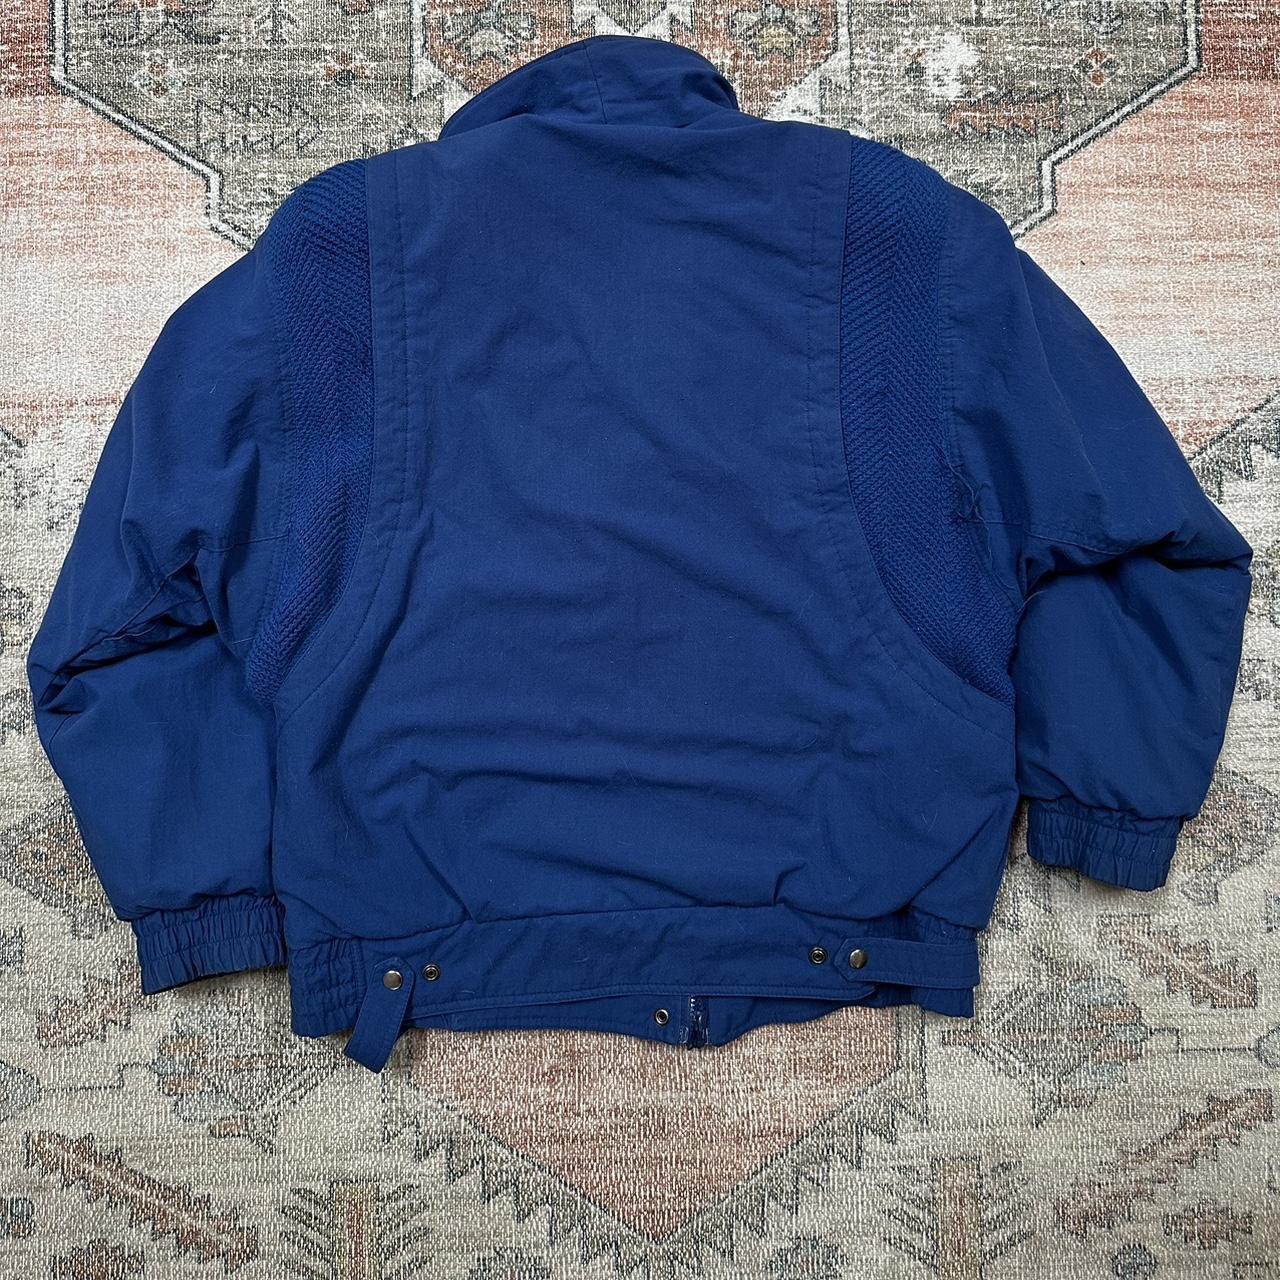 vintage Neil Martin jacket rlly cool details reminds... - Depop